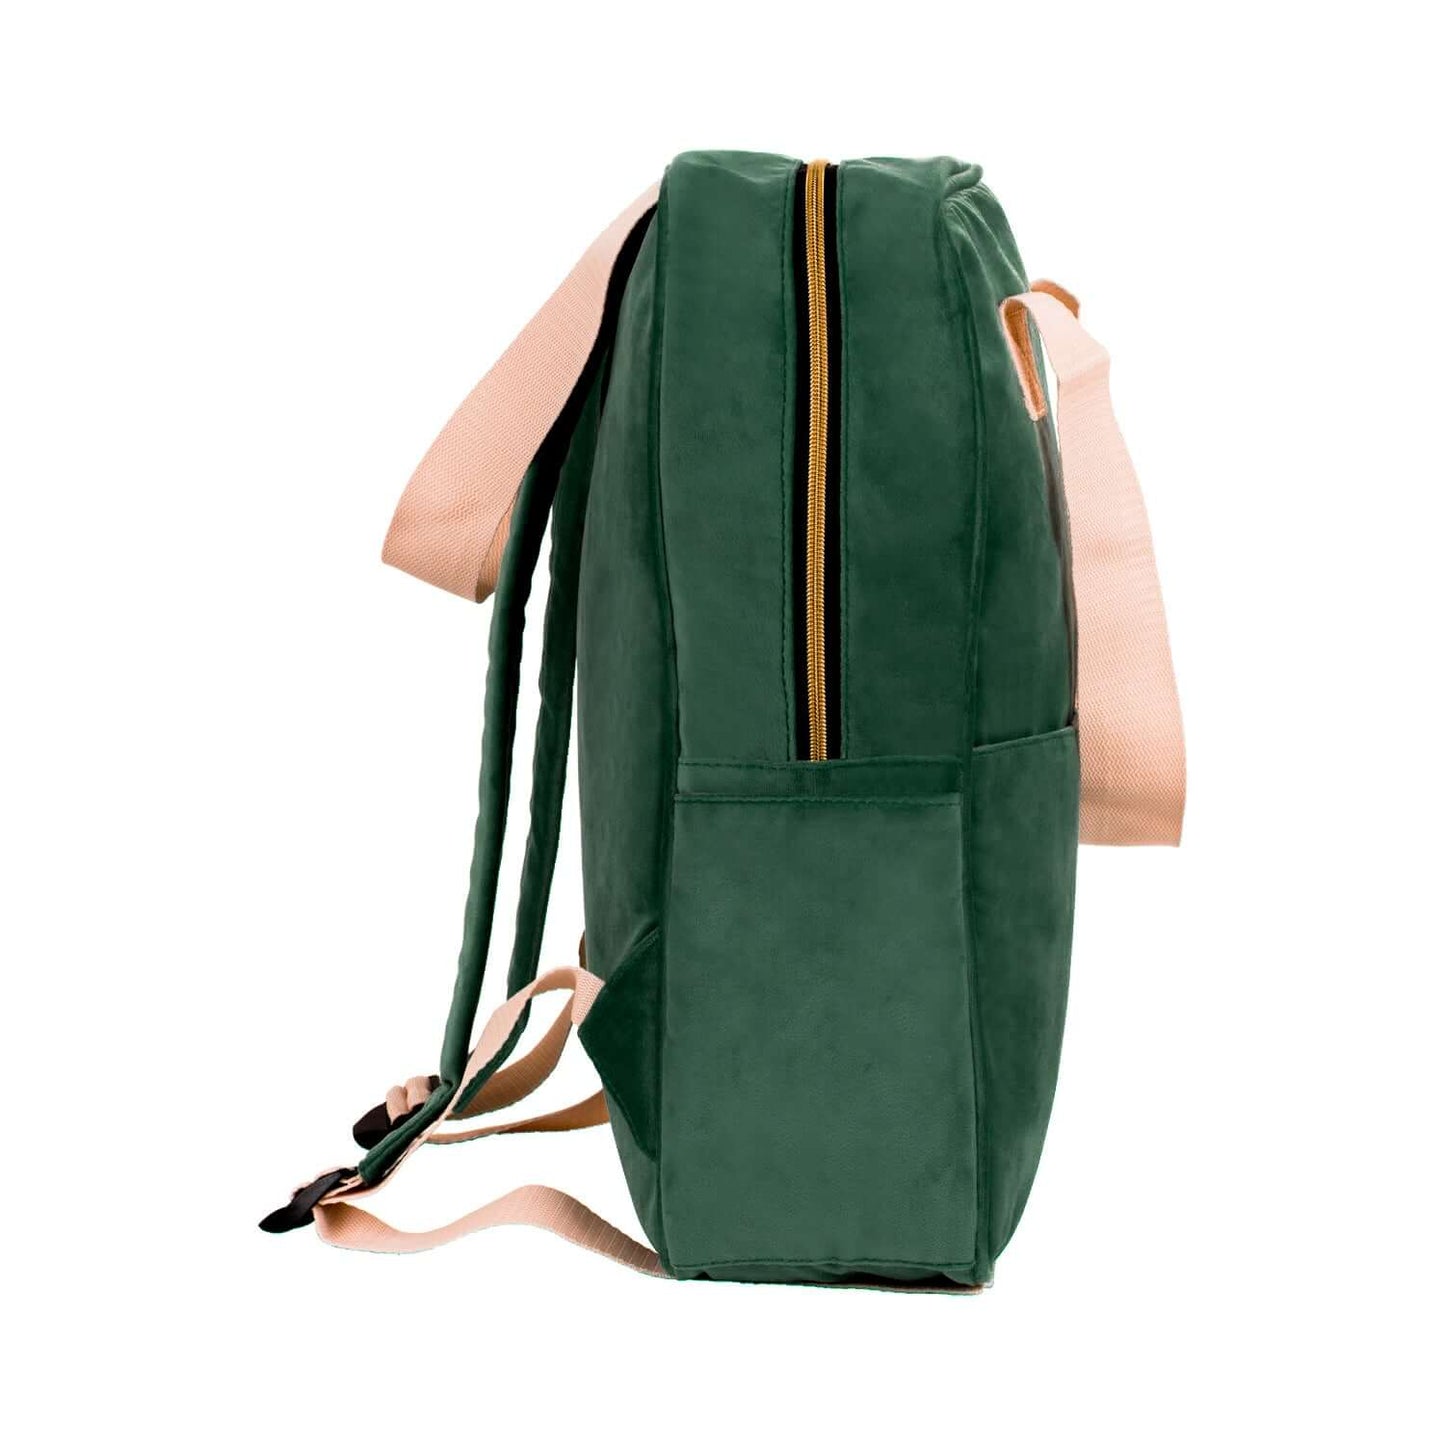 Duży plecak welurowy zielony od Bettys Home bok, elegancki plecak na laptopa damski, plecak do wózka